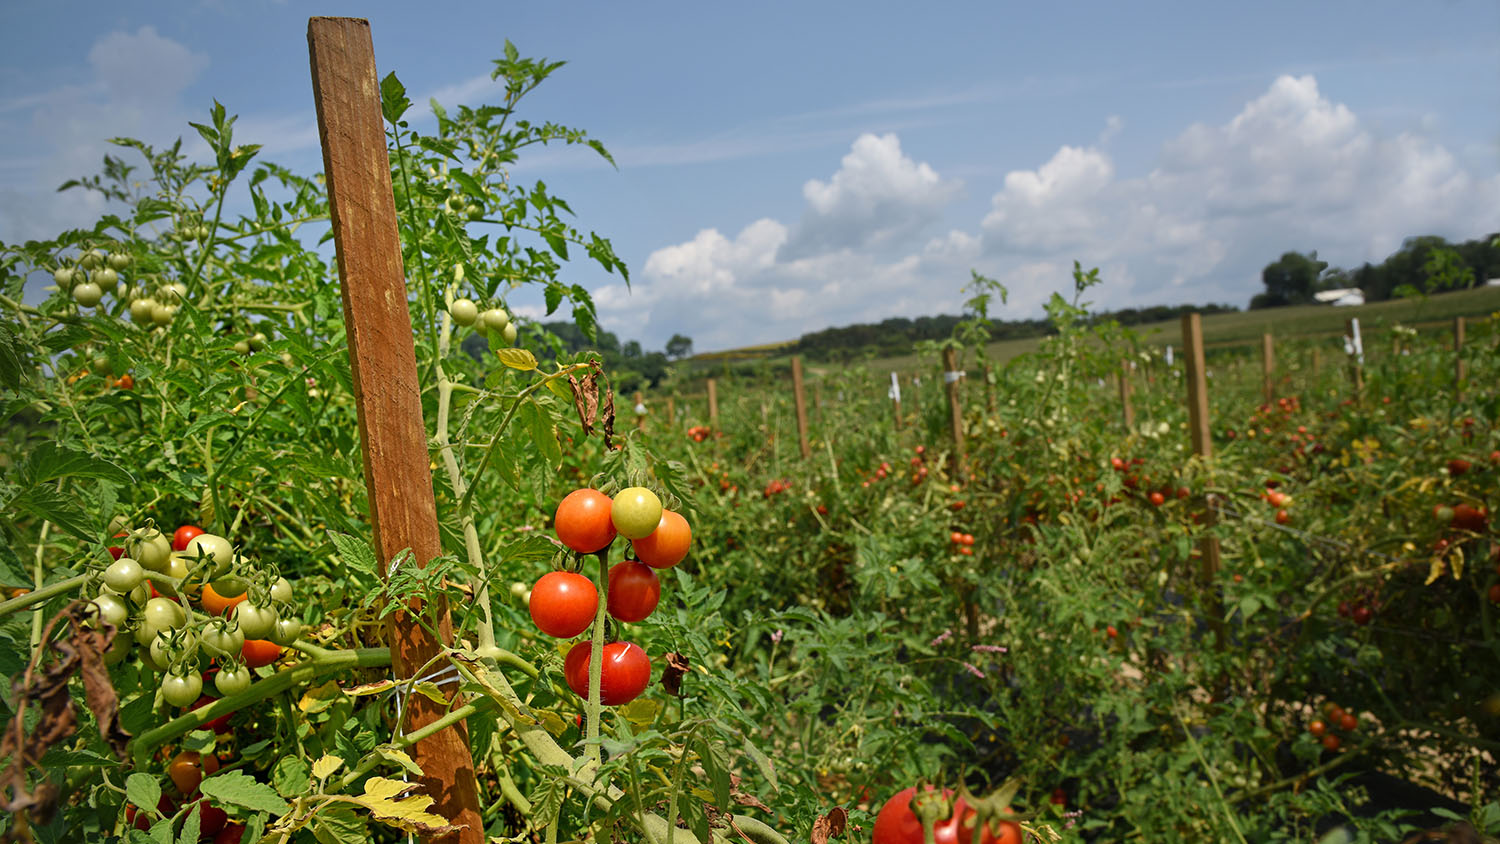 Tomato field in western North Carolina.